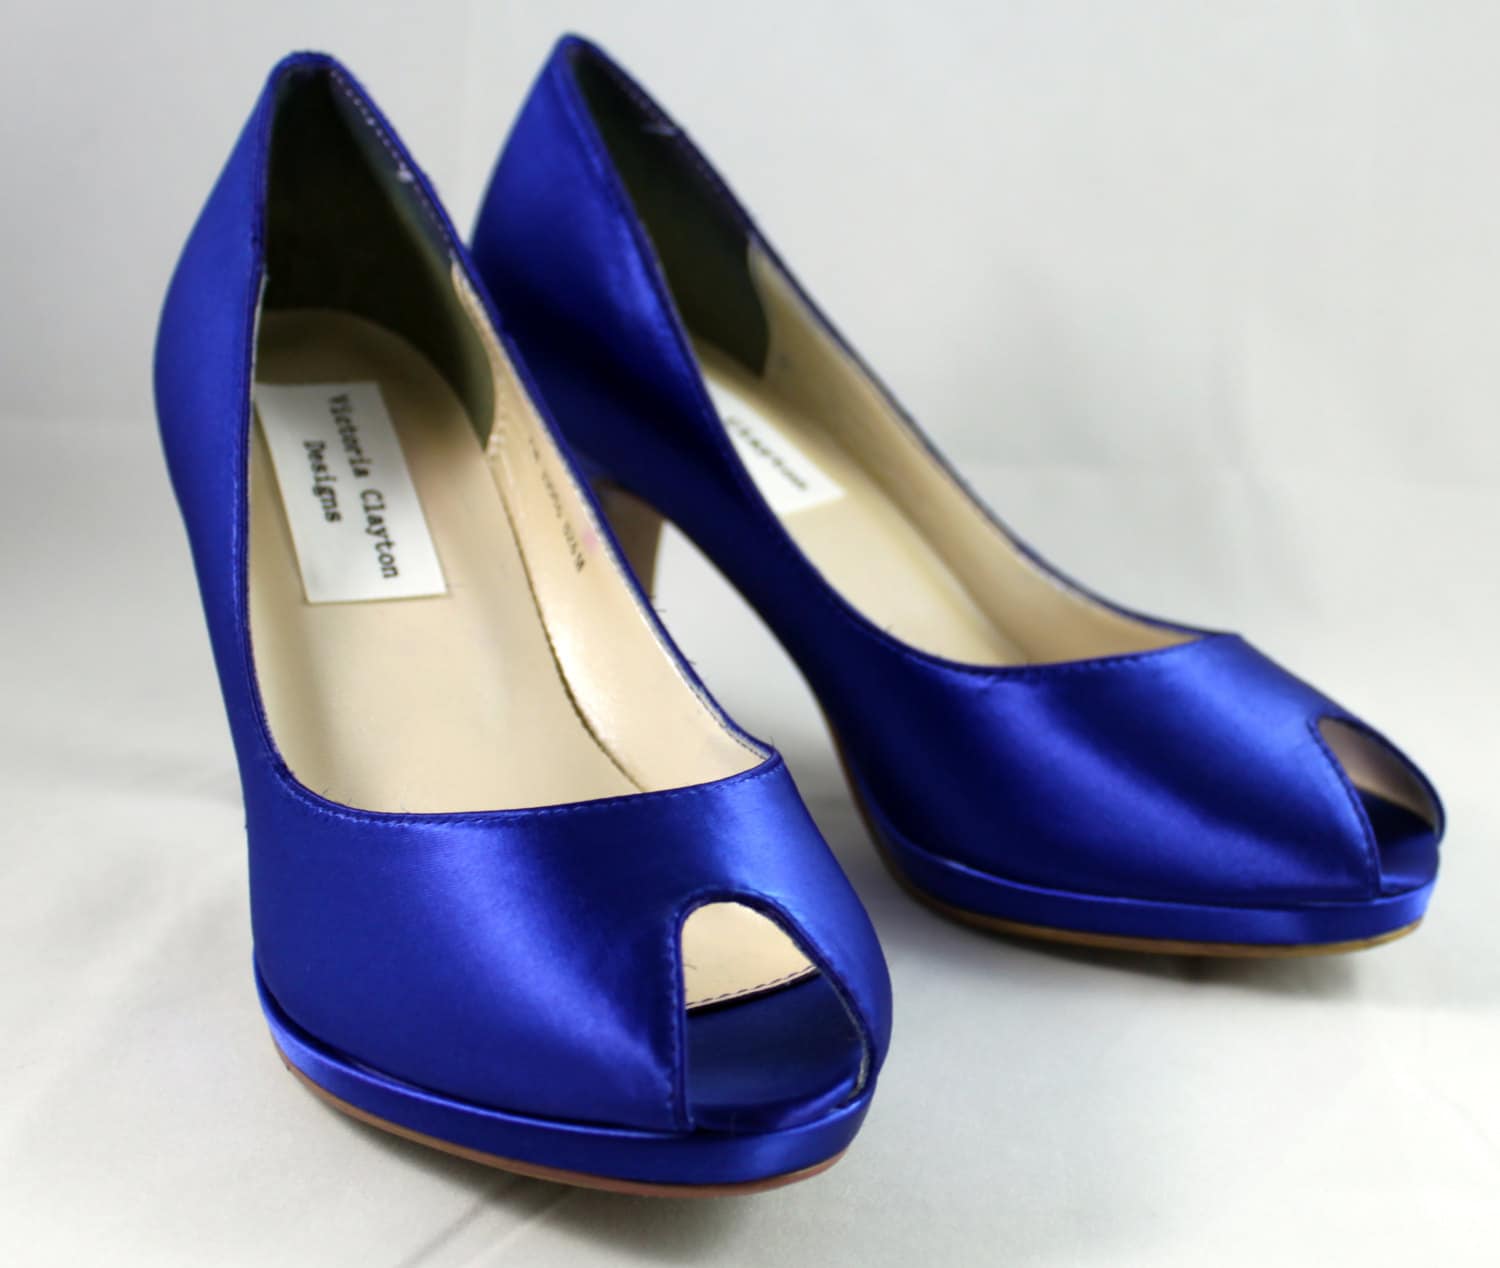 SALE Royal Blue platform wedding shoe- Size 7- 2.75 heel